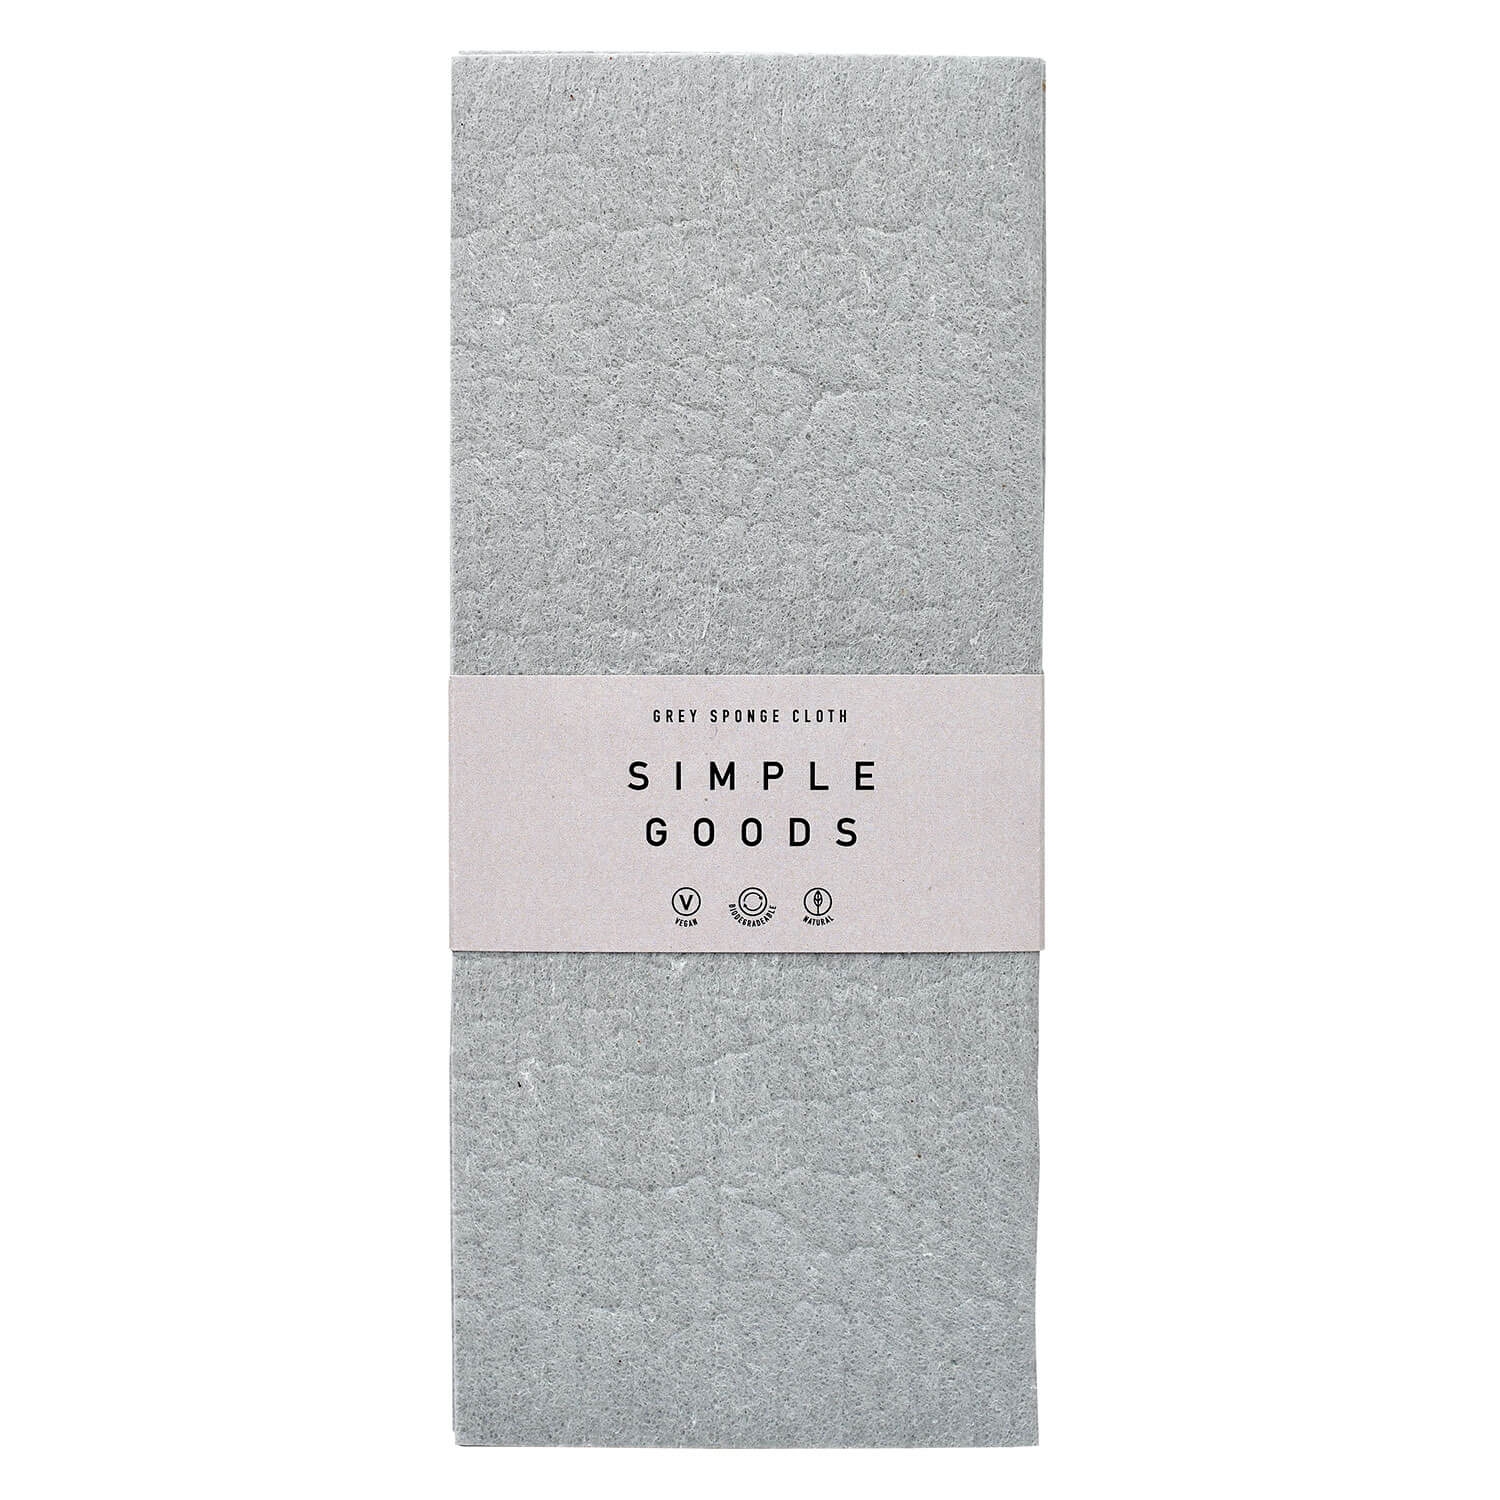 Produktbild von SIMPLE GOODS - Sponge Cloth Grey